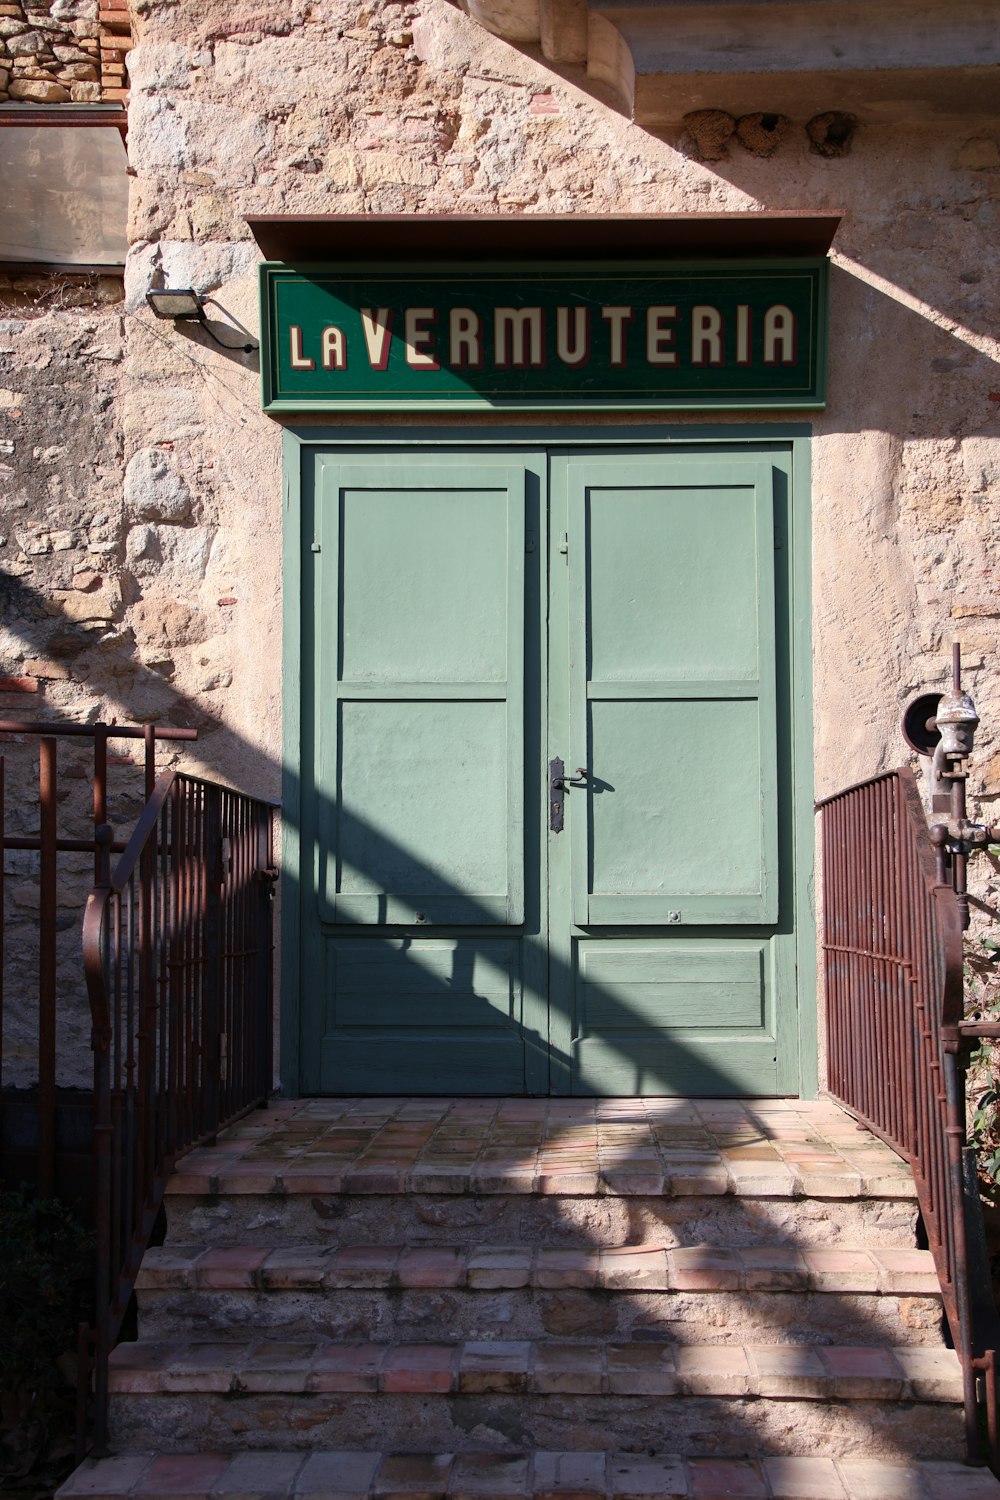 緑色のドアとLa Vermuteriaと書かれた看板のある建物